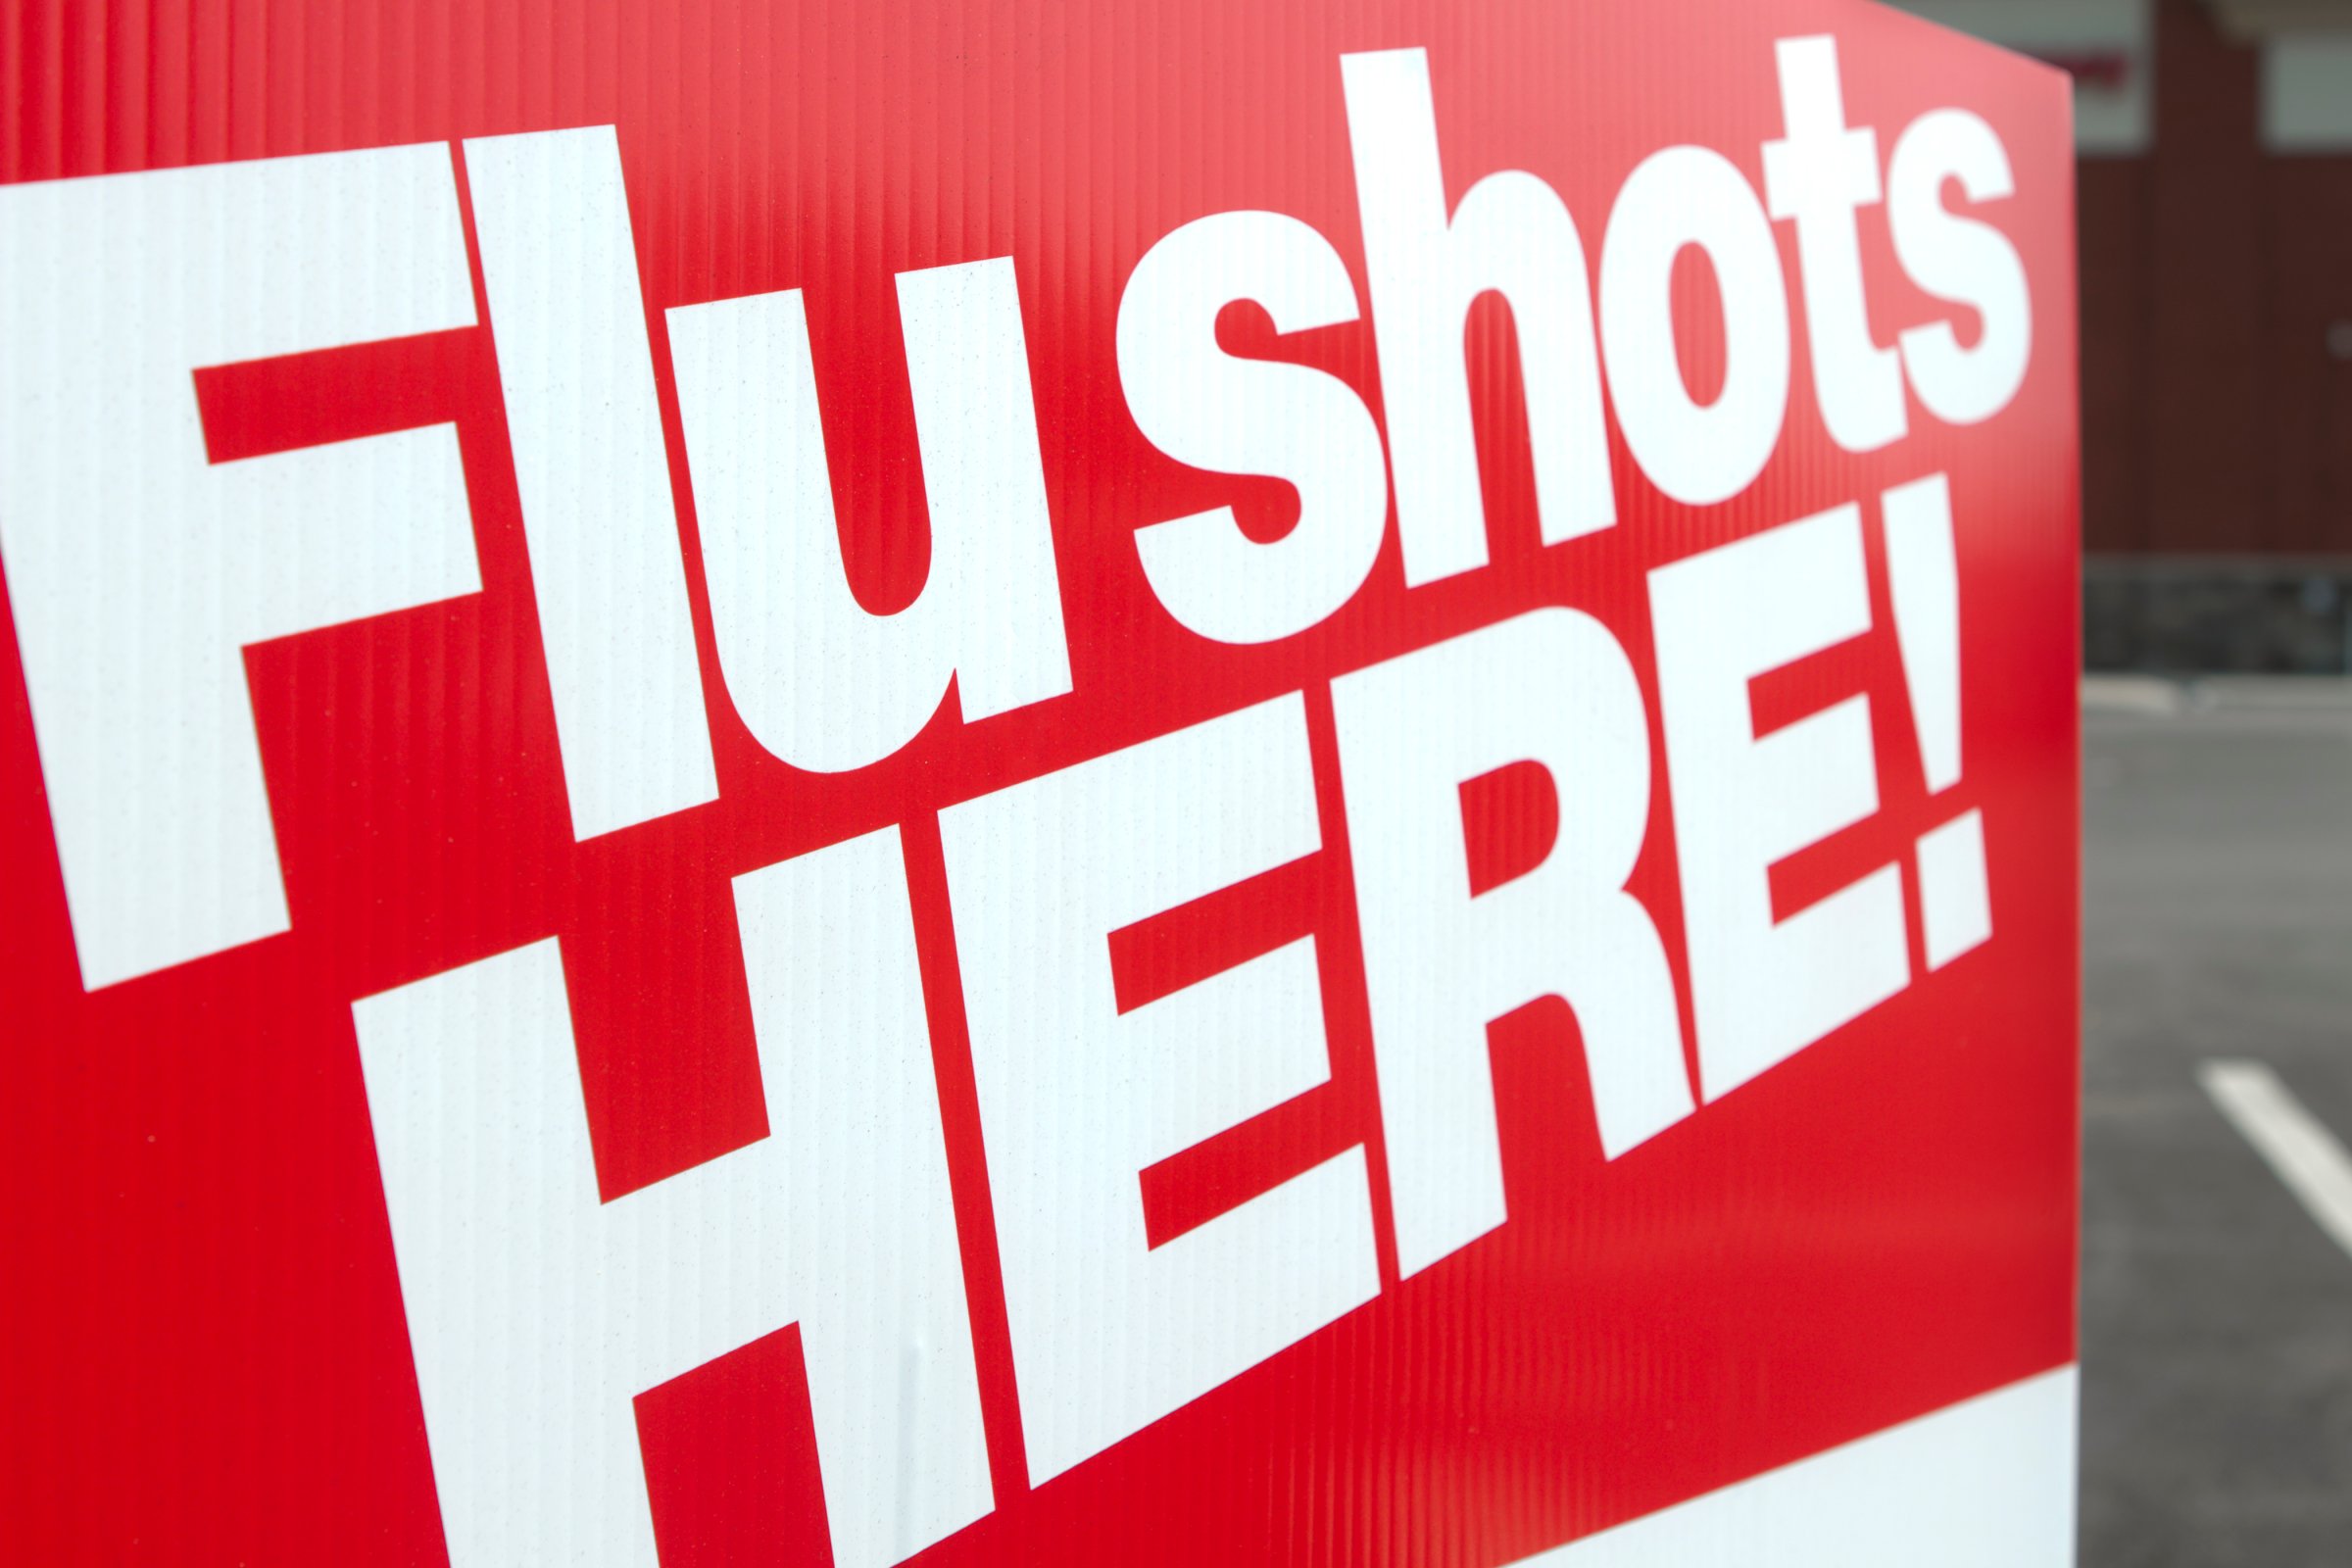 Flu shots here